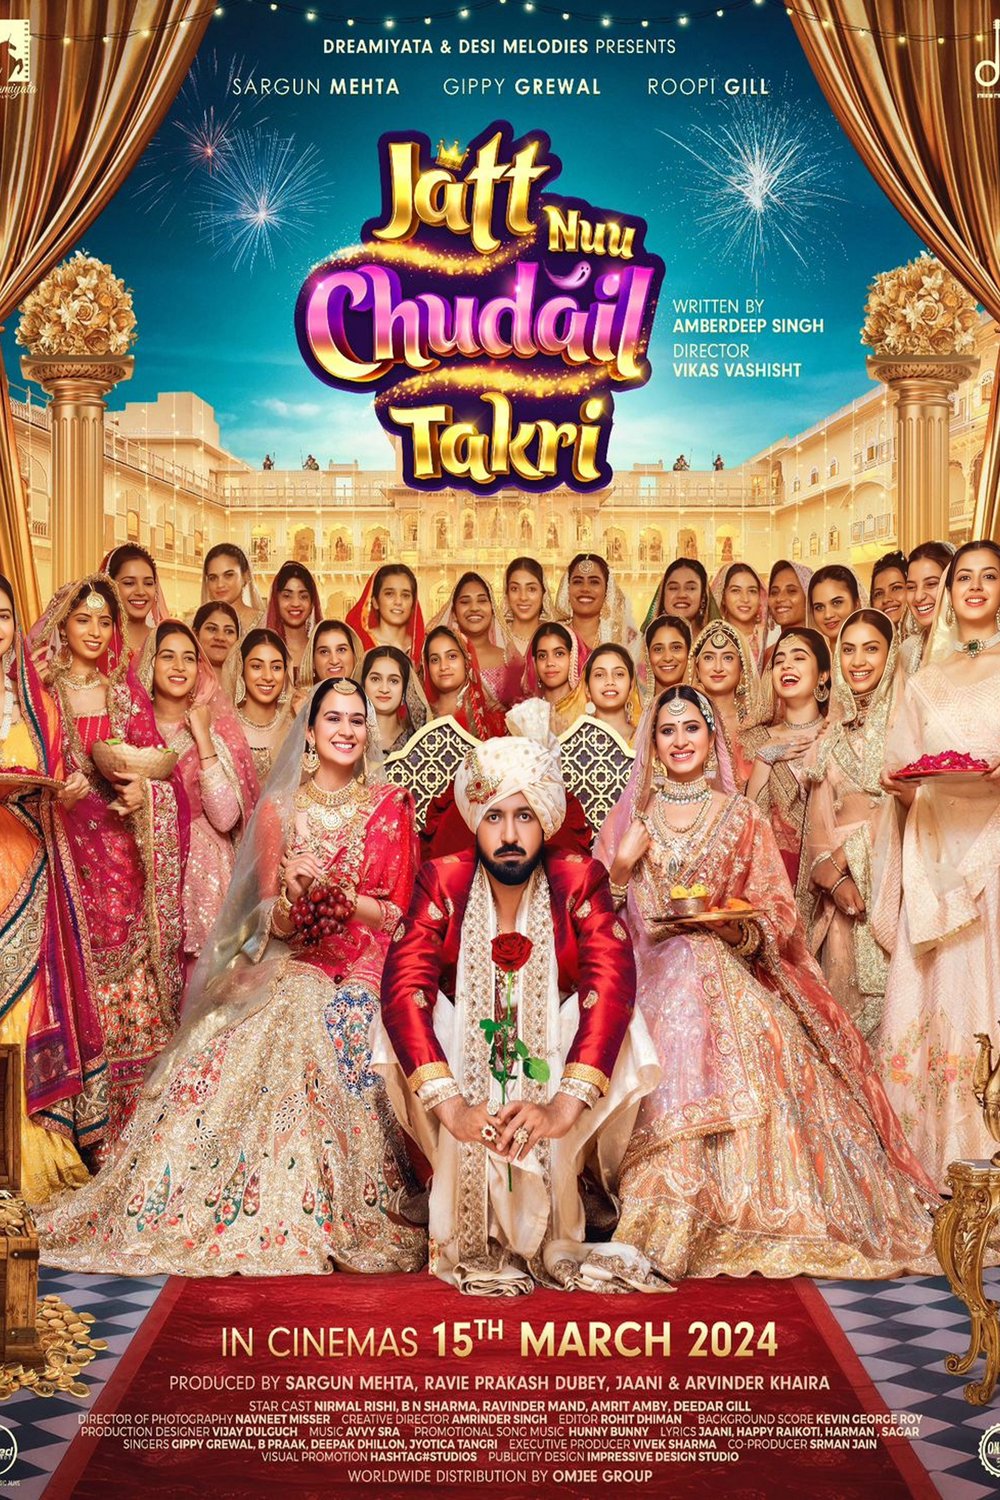 Punjabi poster of the movie Jatt Nuu Chudail Takri